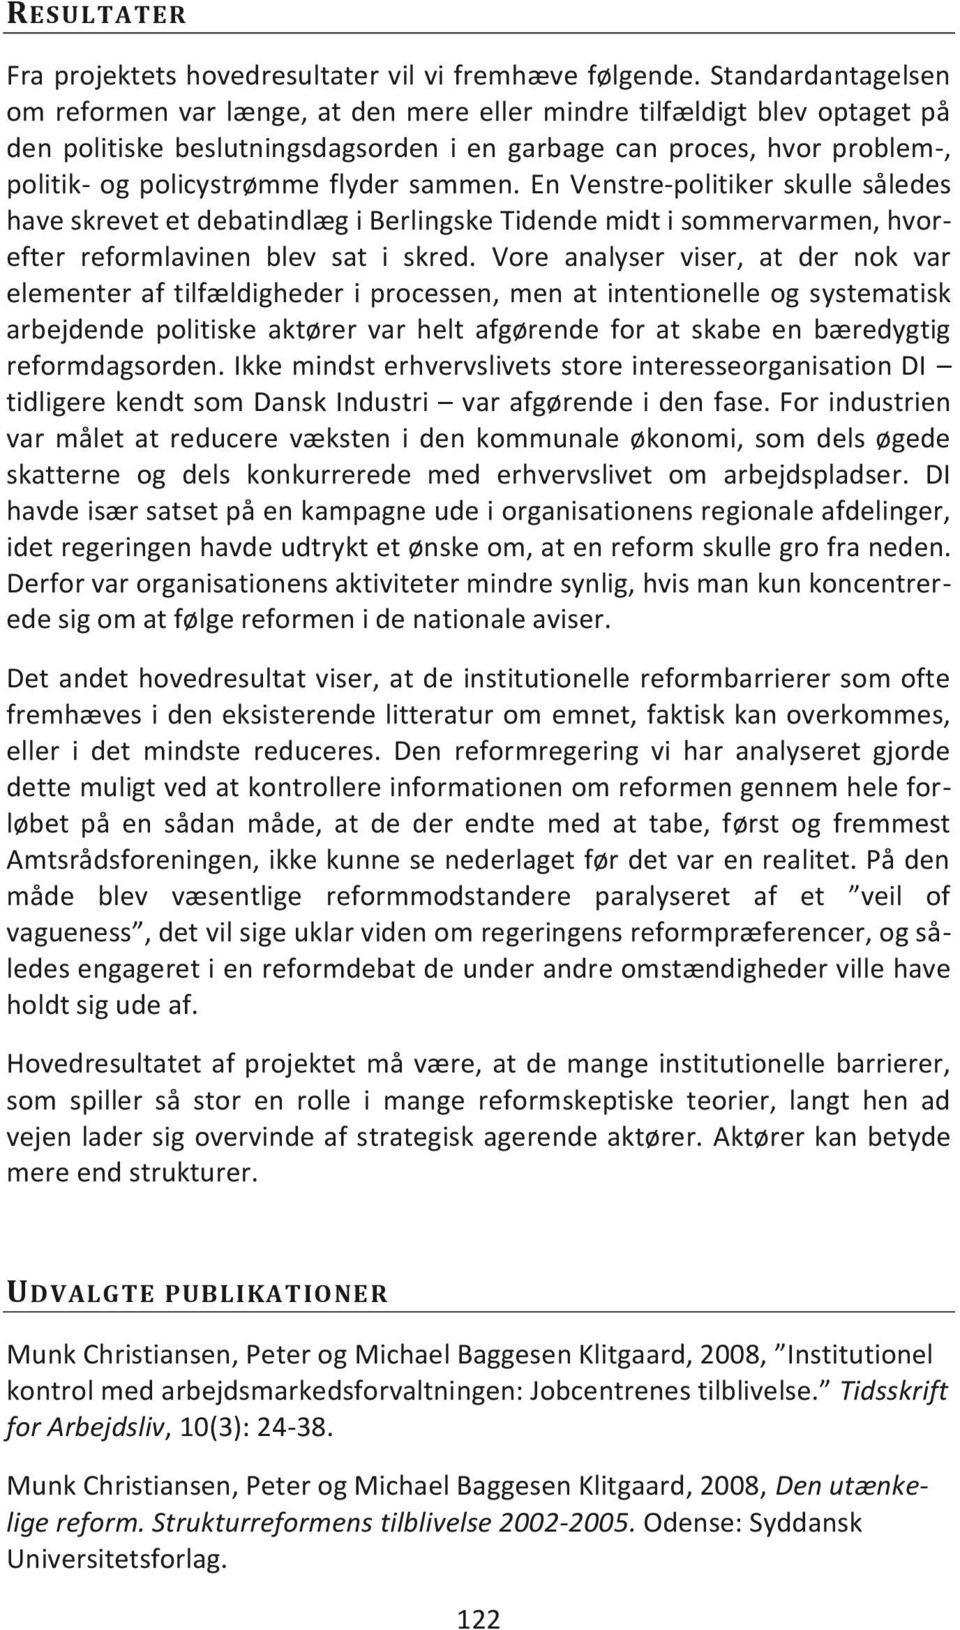 3.1.3 DEN UTÆNKELIGE REFORM - PDF Free Download